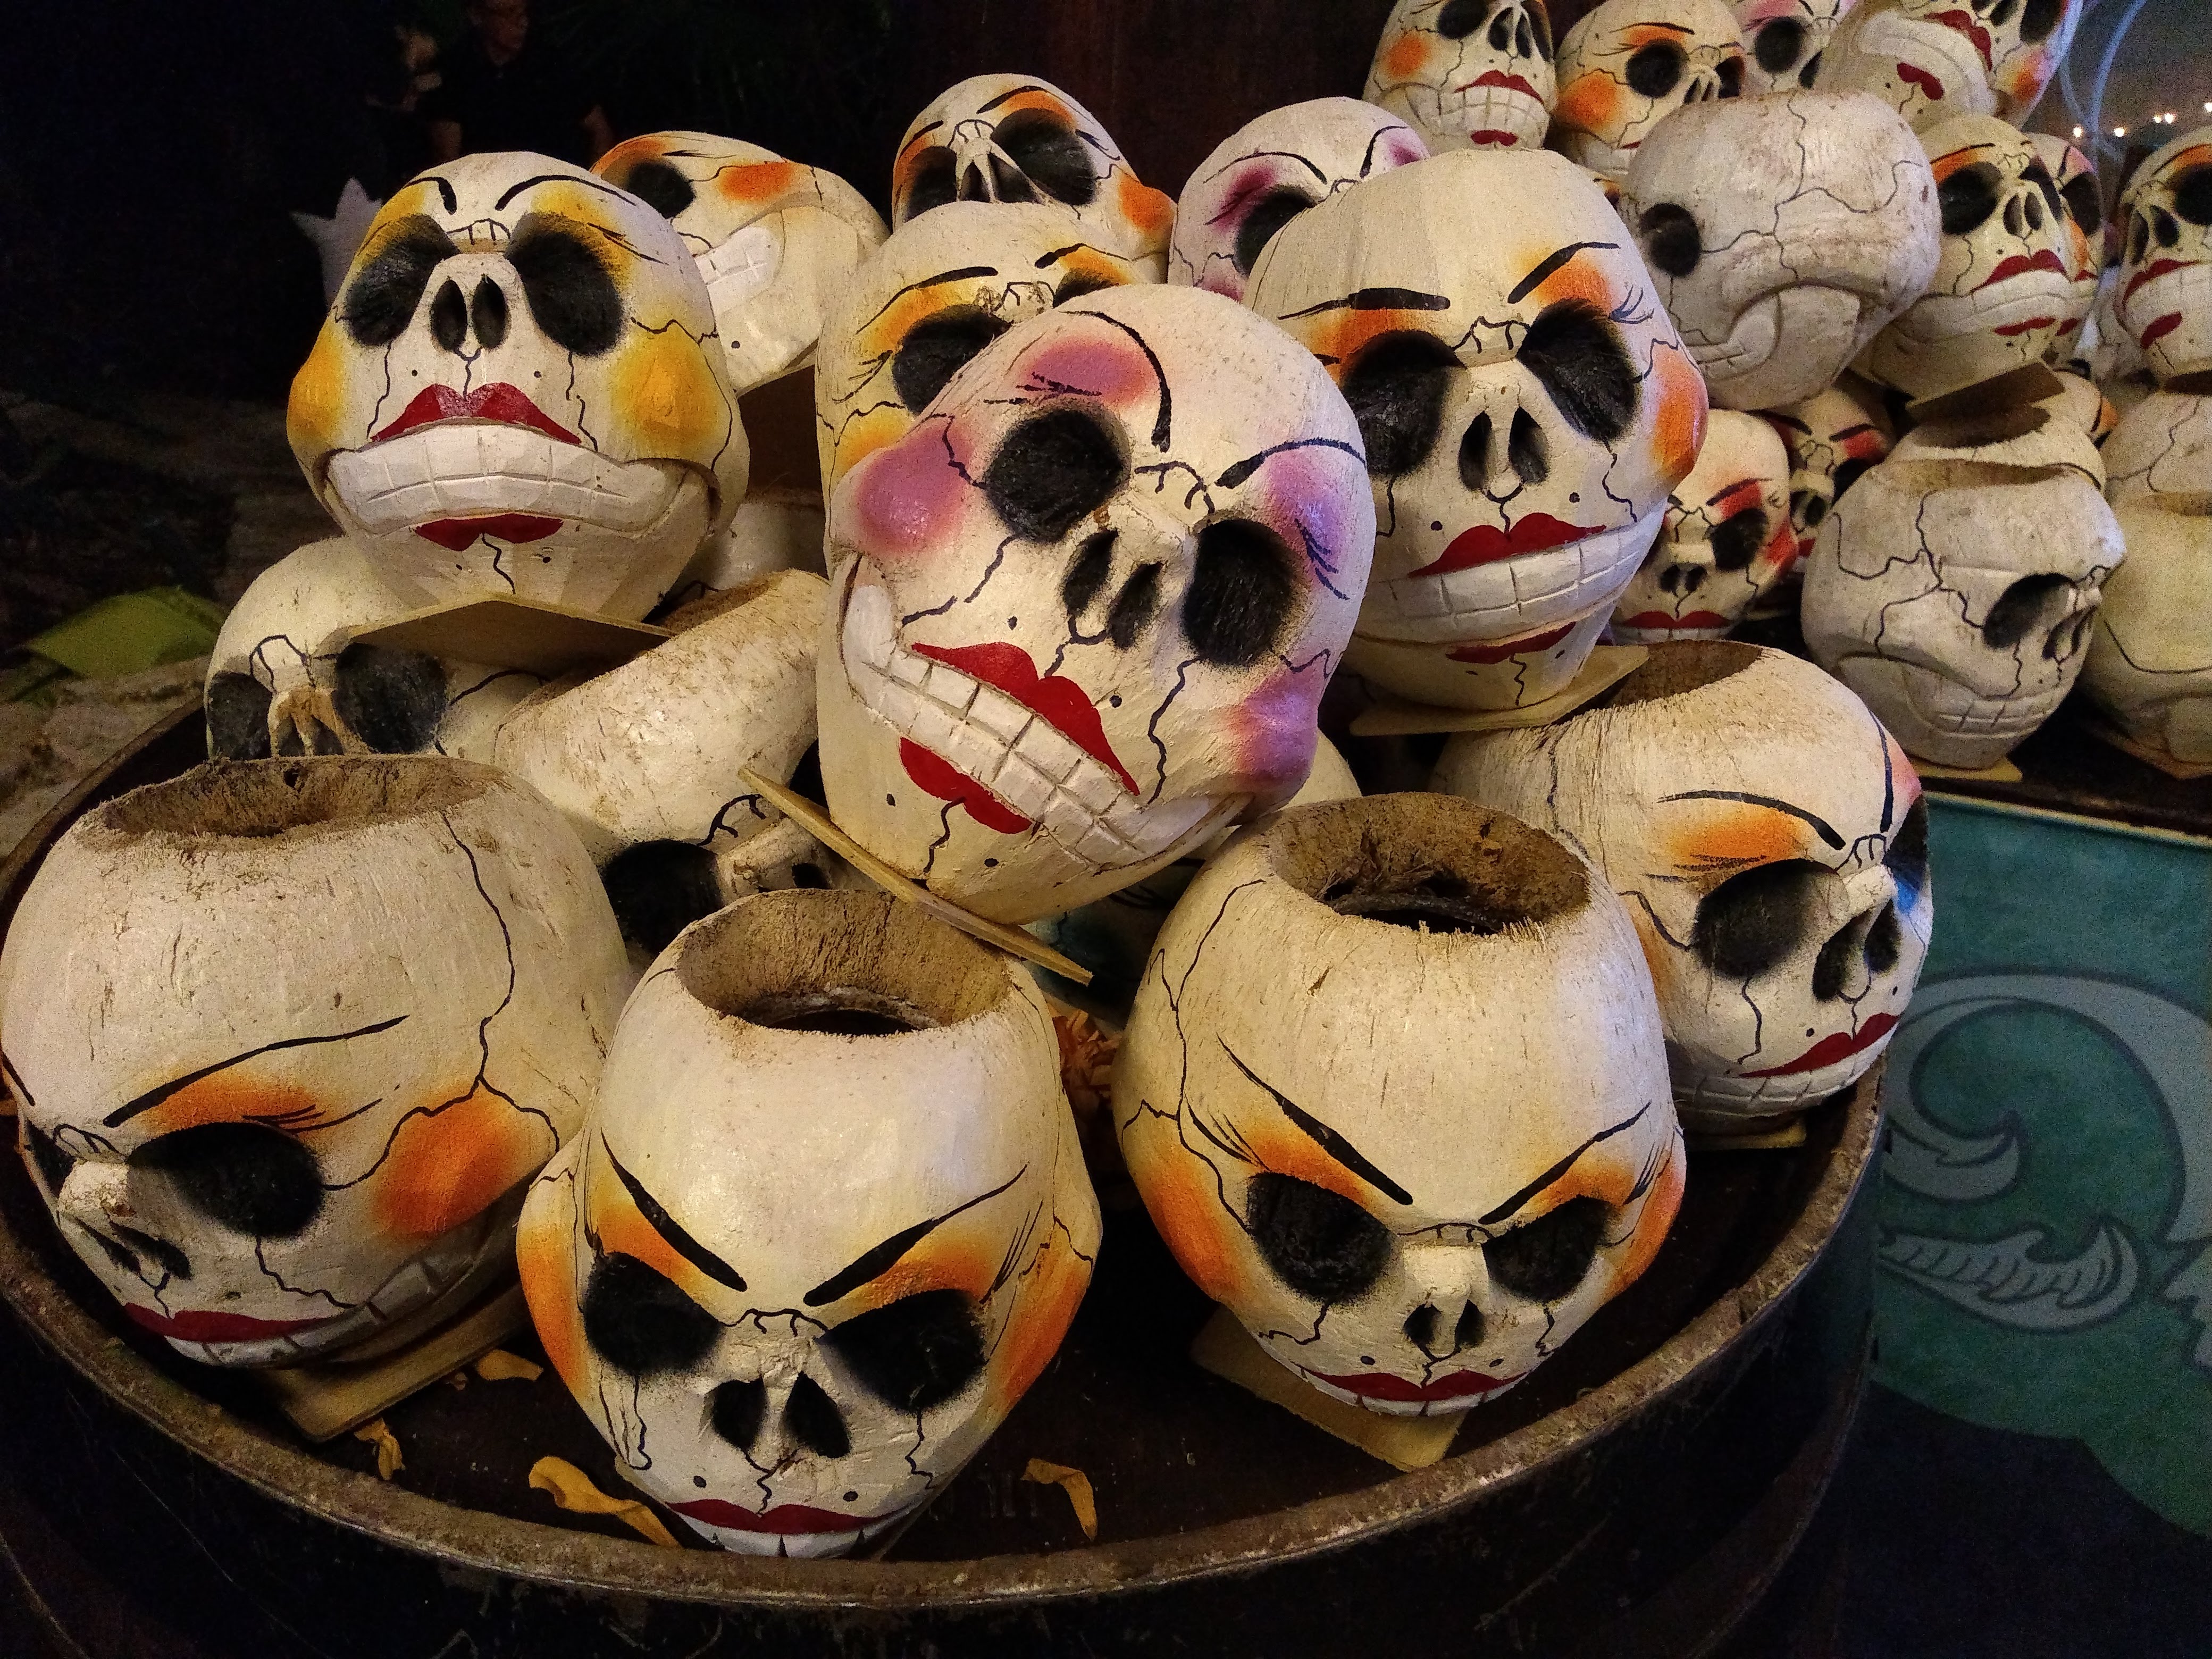 Dia de Muertos – Day of the Dead in Mexico